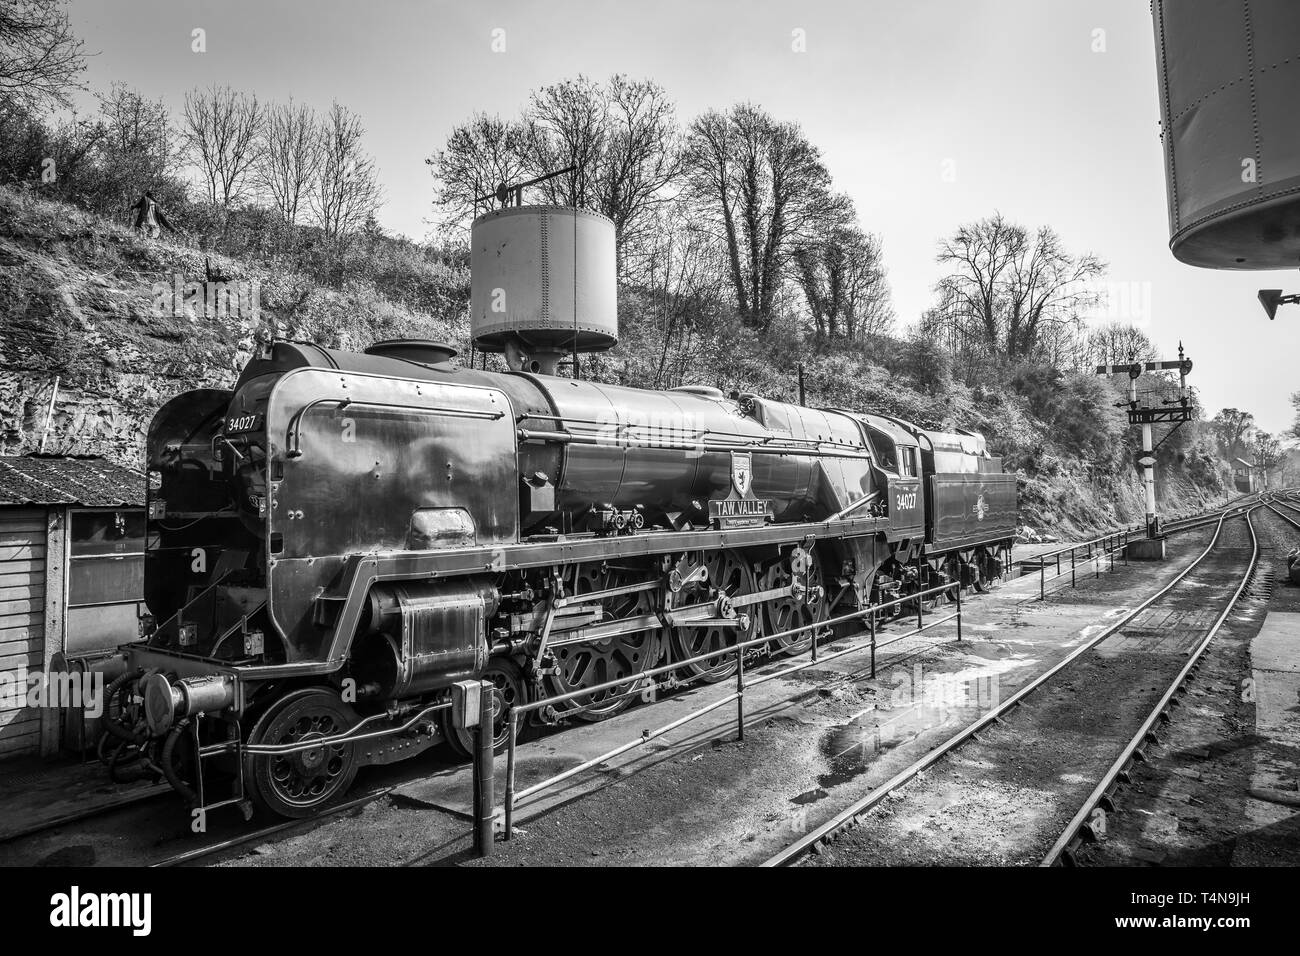 Schwarz-Weiß-Seitenansicht der alten britischen Dampflokomotive 34027 Taw Valley im Nebengebäude, Severn Valley Heritage Railway Station, Bewdley. Stockfoto